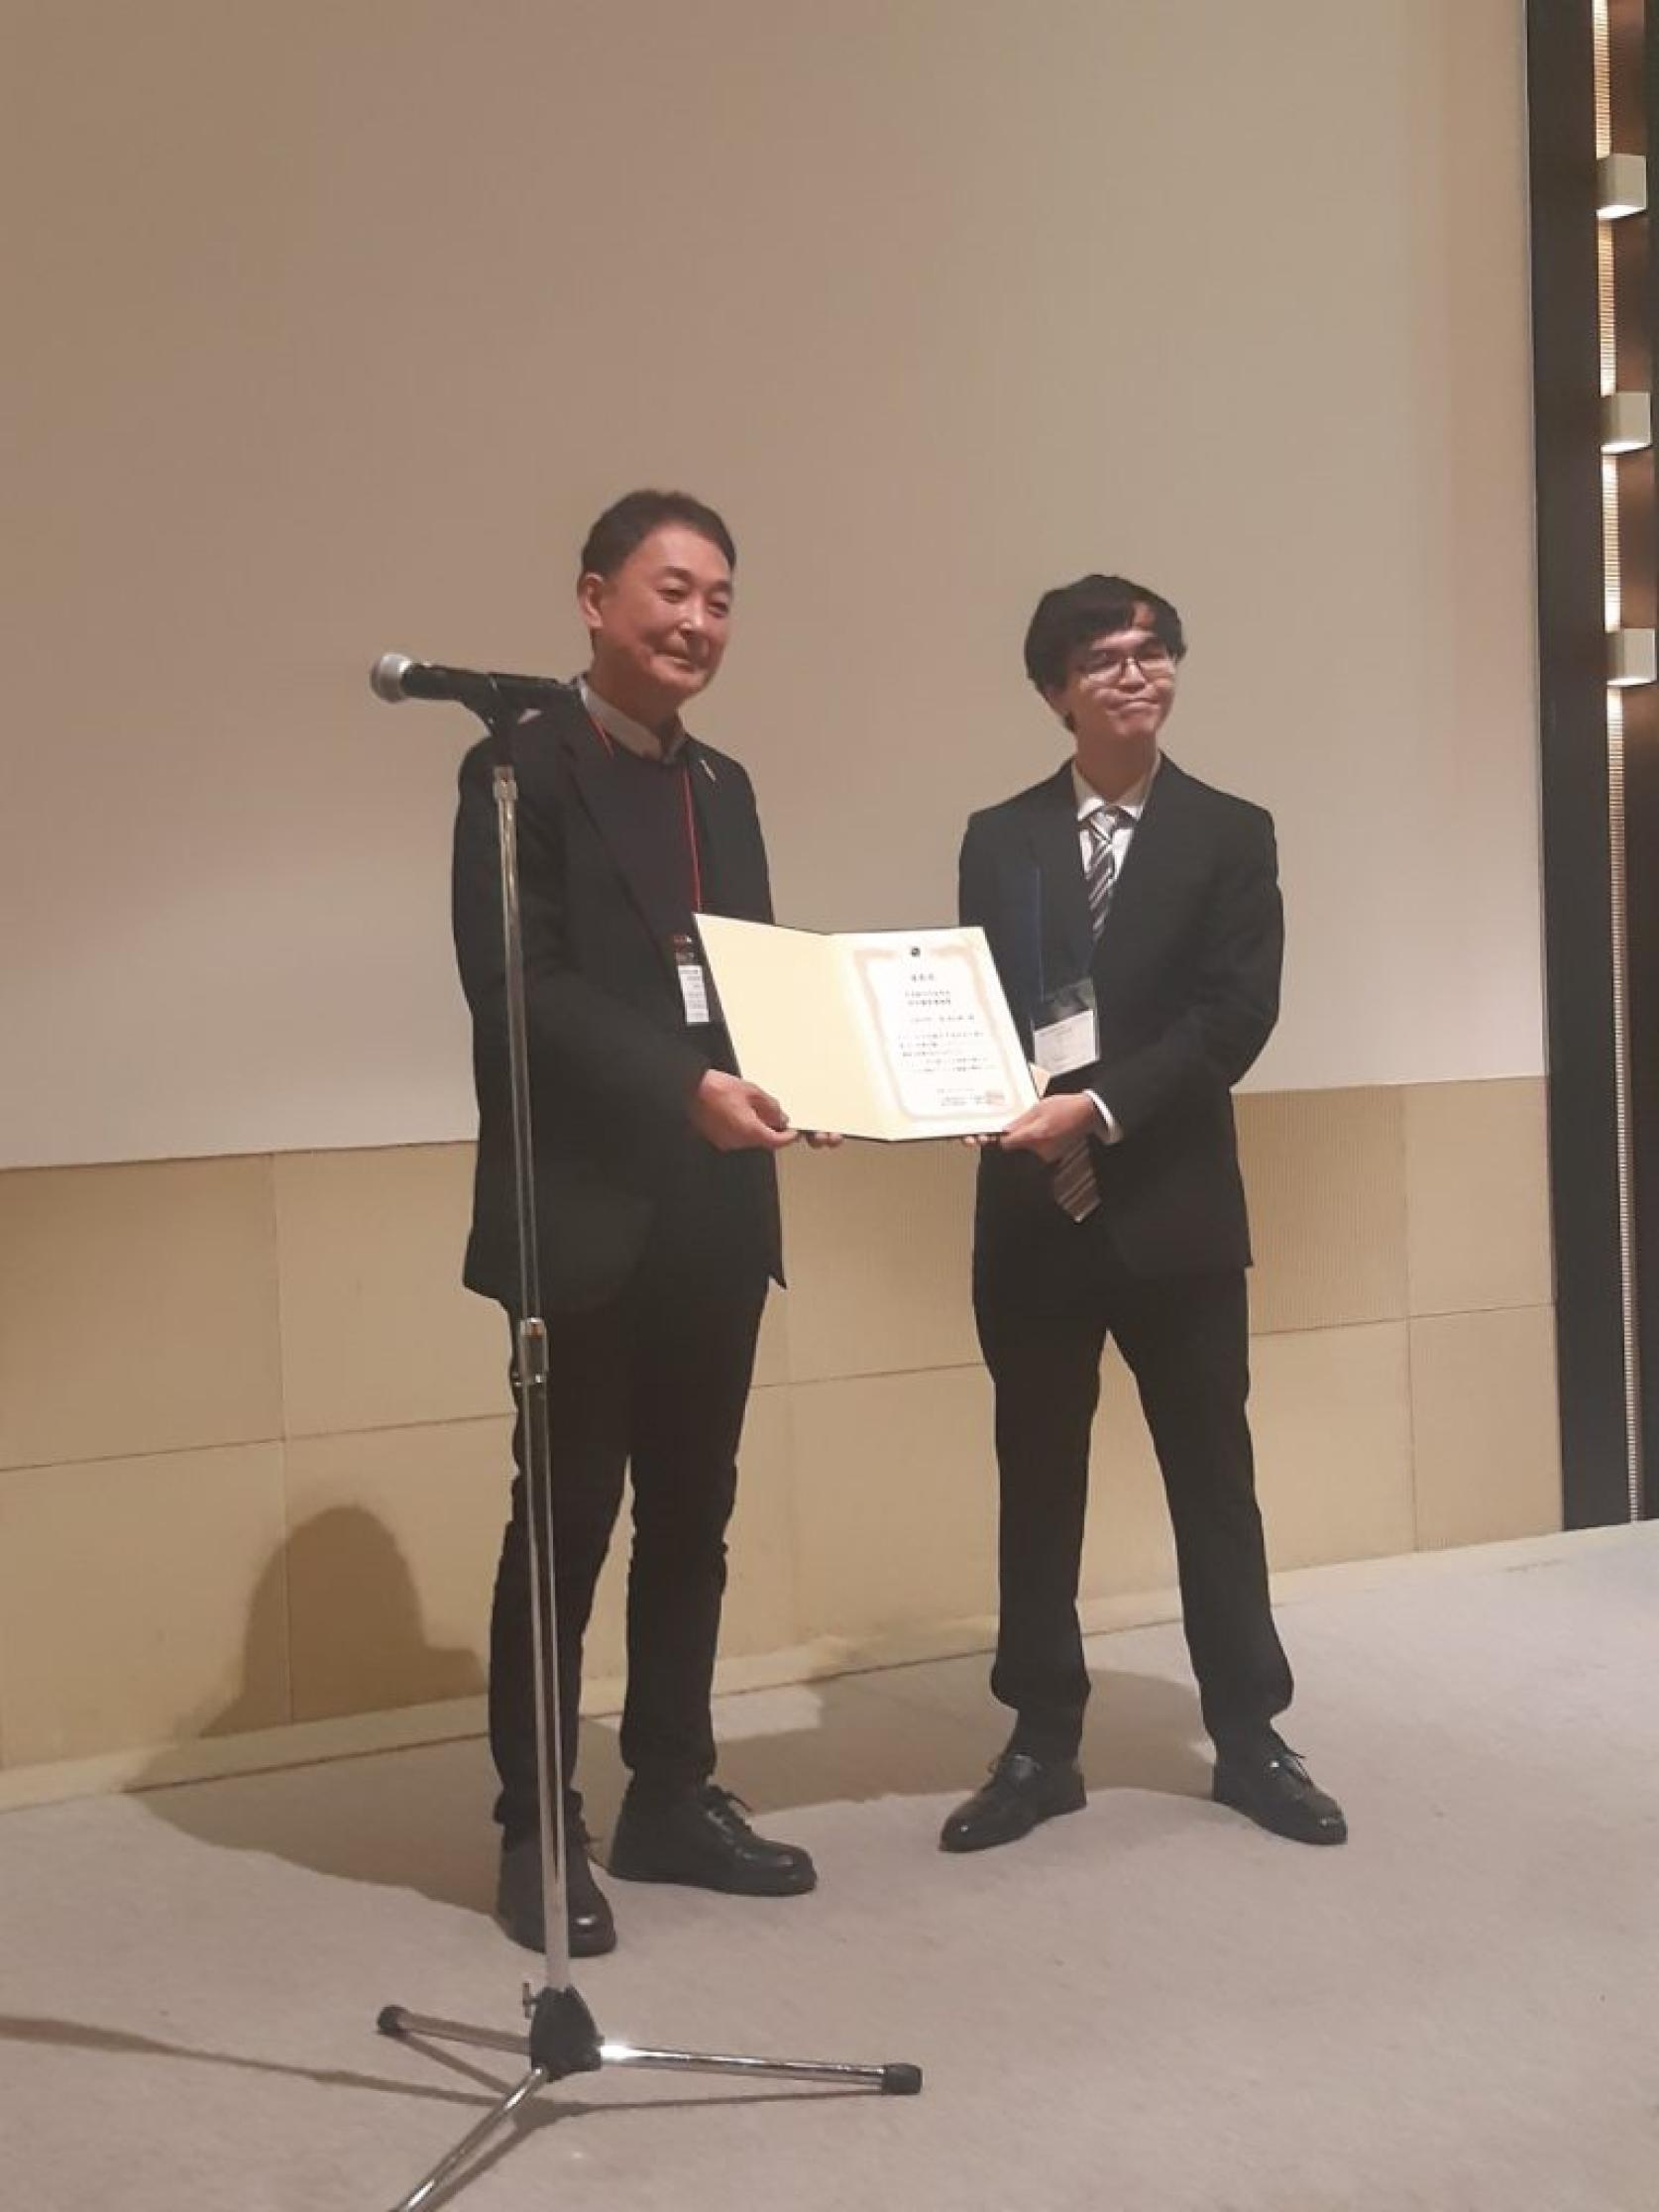 航空宇宙工学専攻博士前期課程1年星亮太朗さんが、第61回飛行機シンポジウムで学生優秀講演賞を受賞しました。